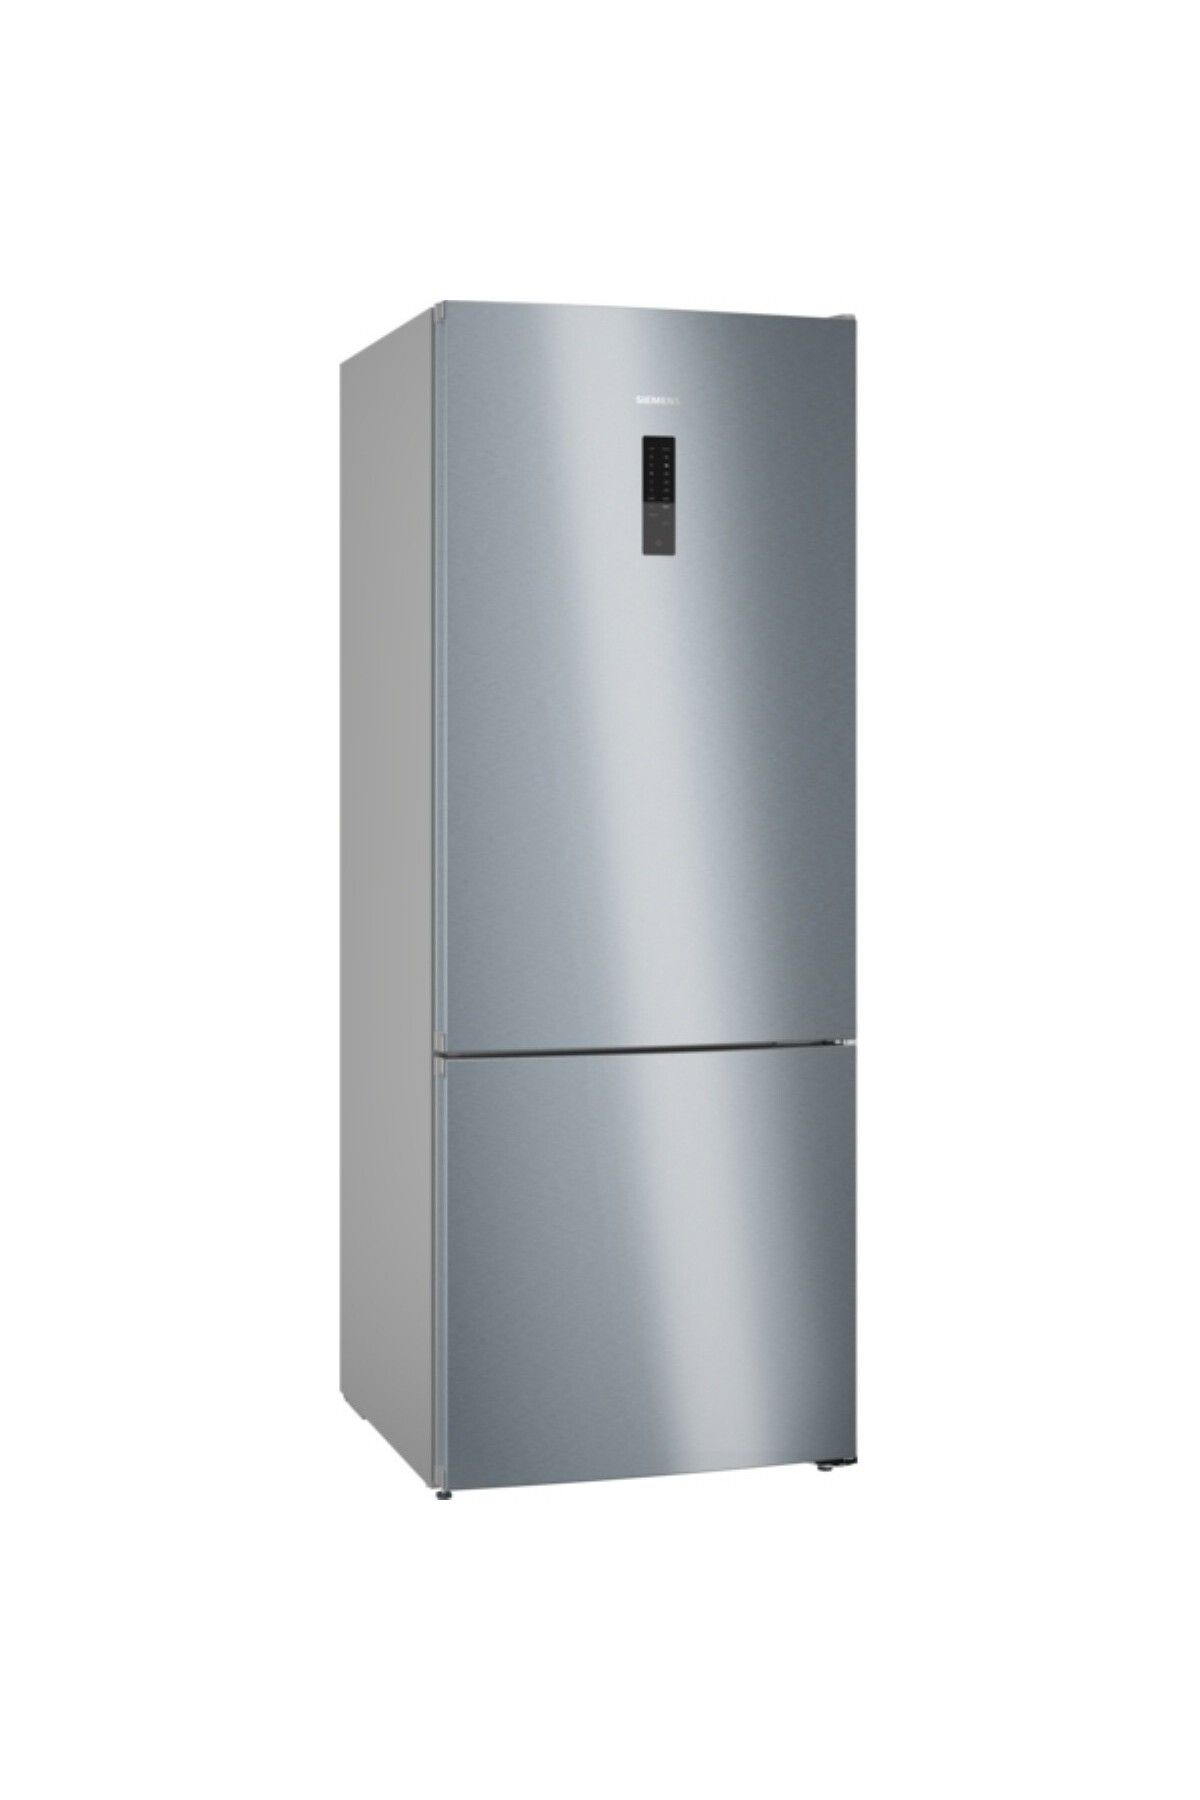 Siemens Alttan Donduruculu Buzdolabı 186 x 70 cm Kolay temizlenebilir Inox